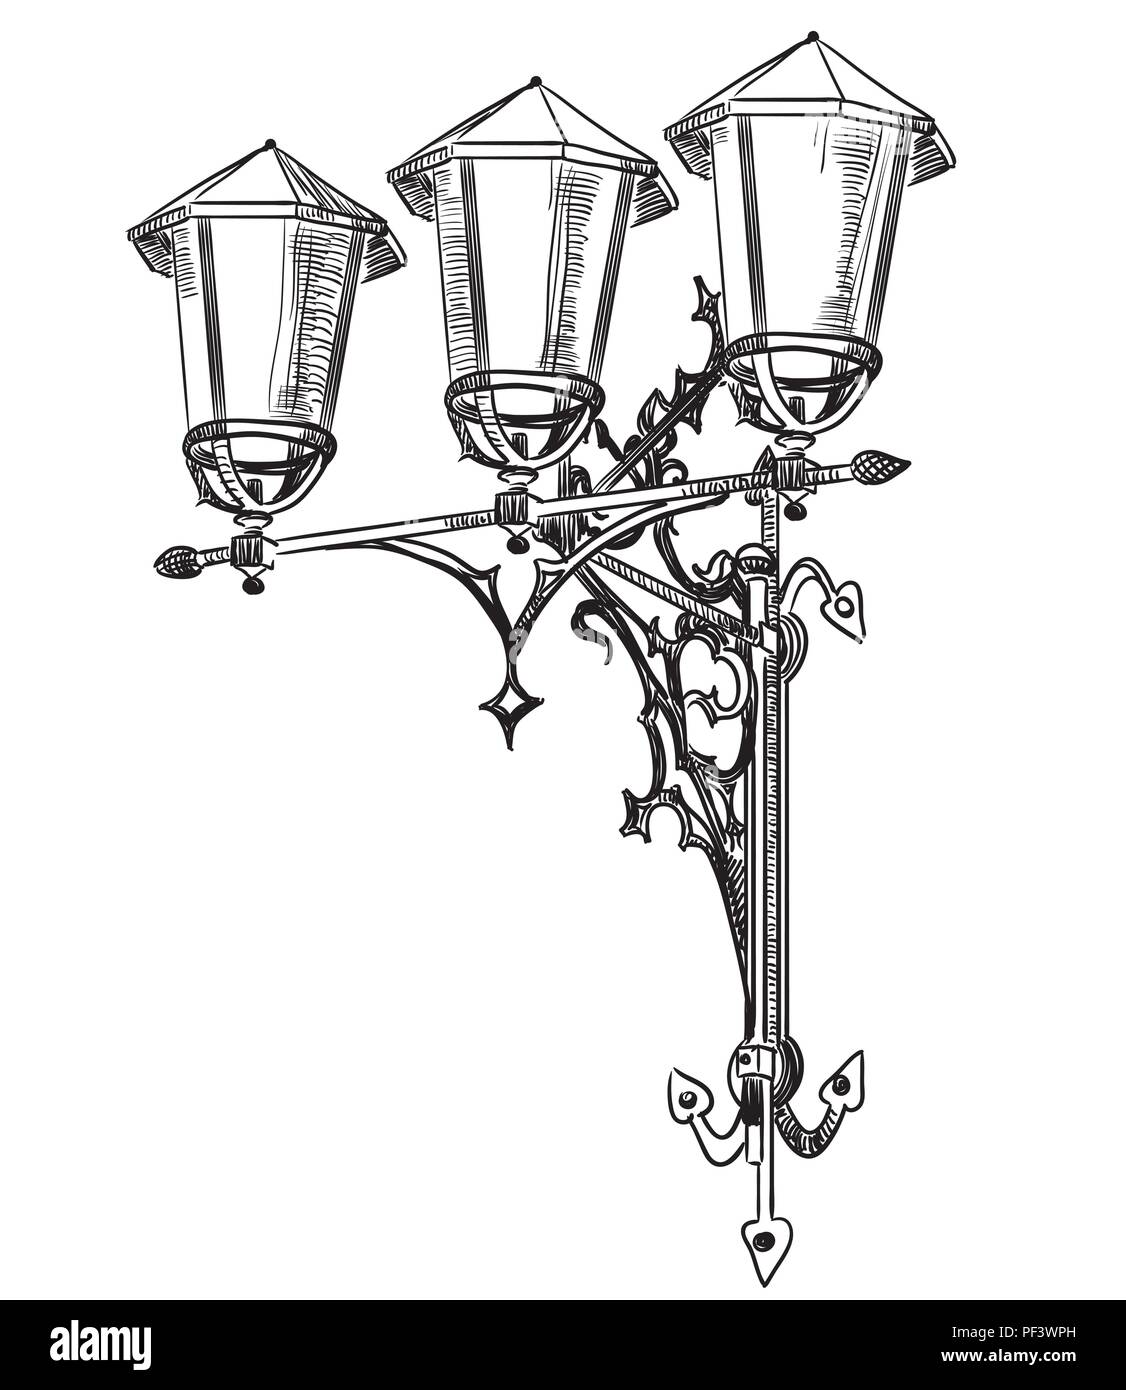 Dessin à la main vieille lampe rue vector illustration monochrome en couleur noir isolé sur fond blanc Illustration de Vecteur